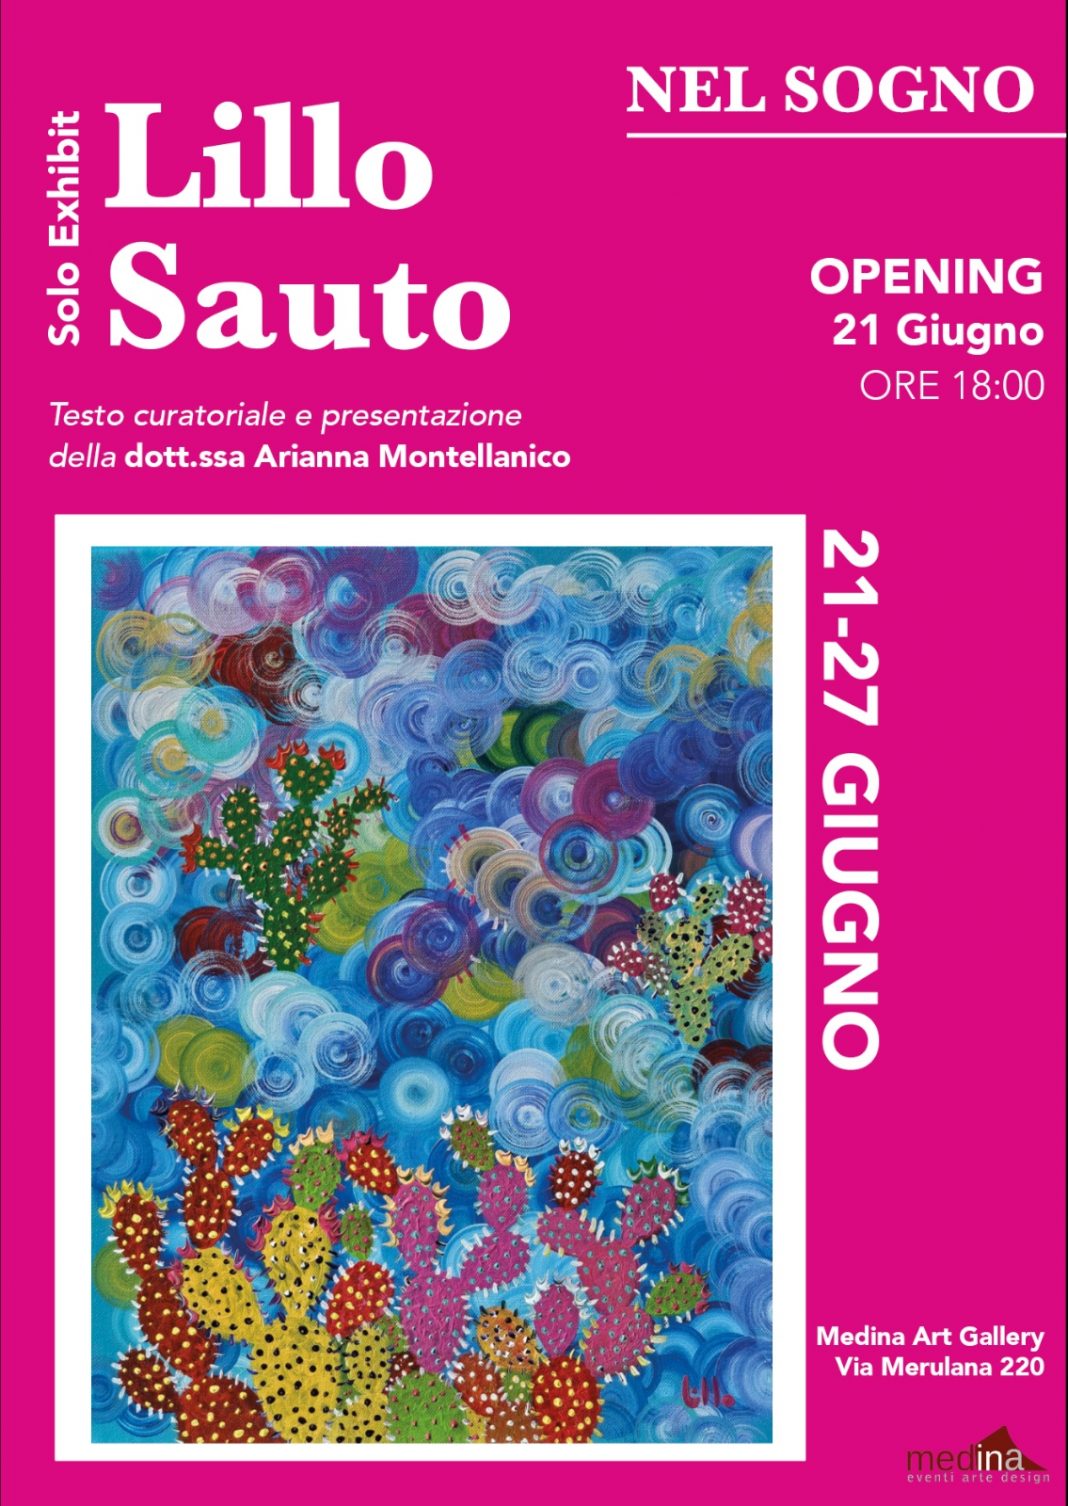 Lillo Sauto – Nel Sognohttps://www.exibart.com/repository/media/formidable/11/img/5fd/Locandina-Solo-Exhibit-di-Lillo-Sauto-1068x1506.jpeg